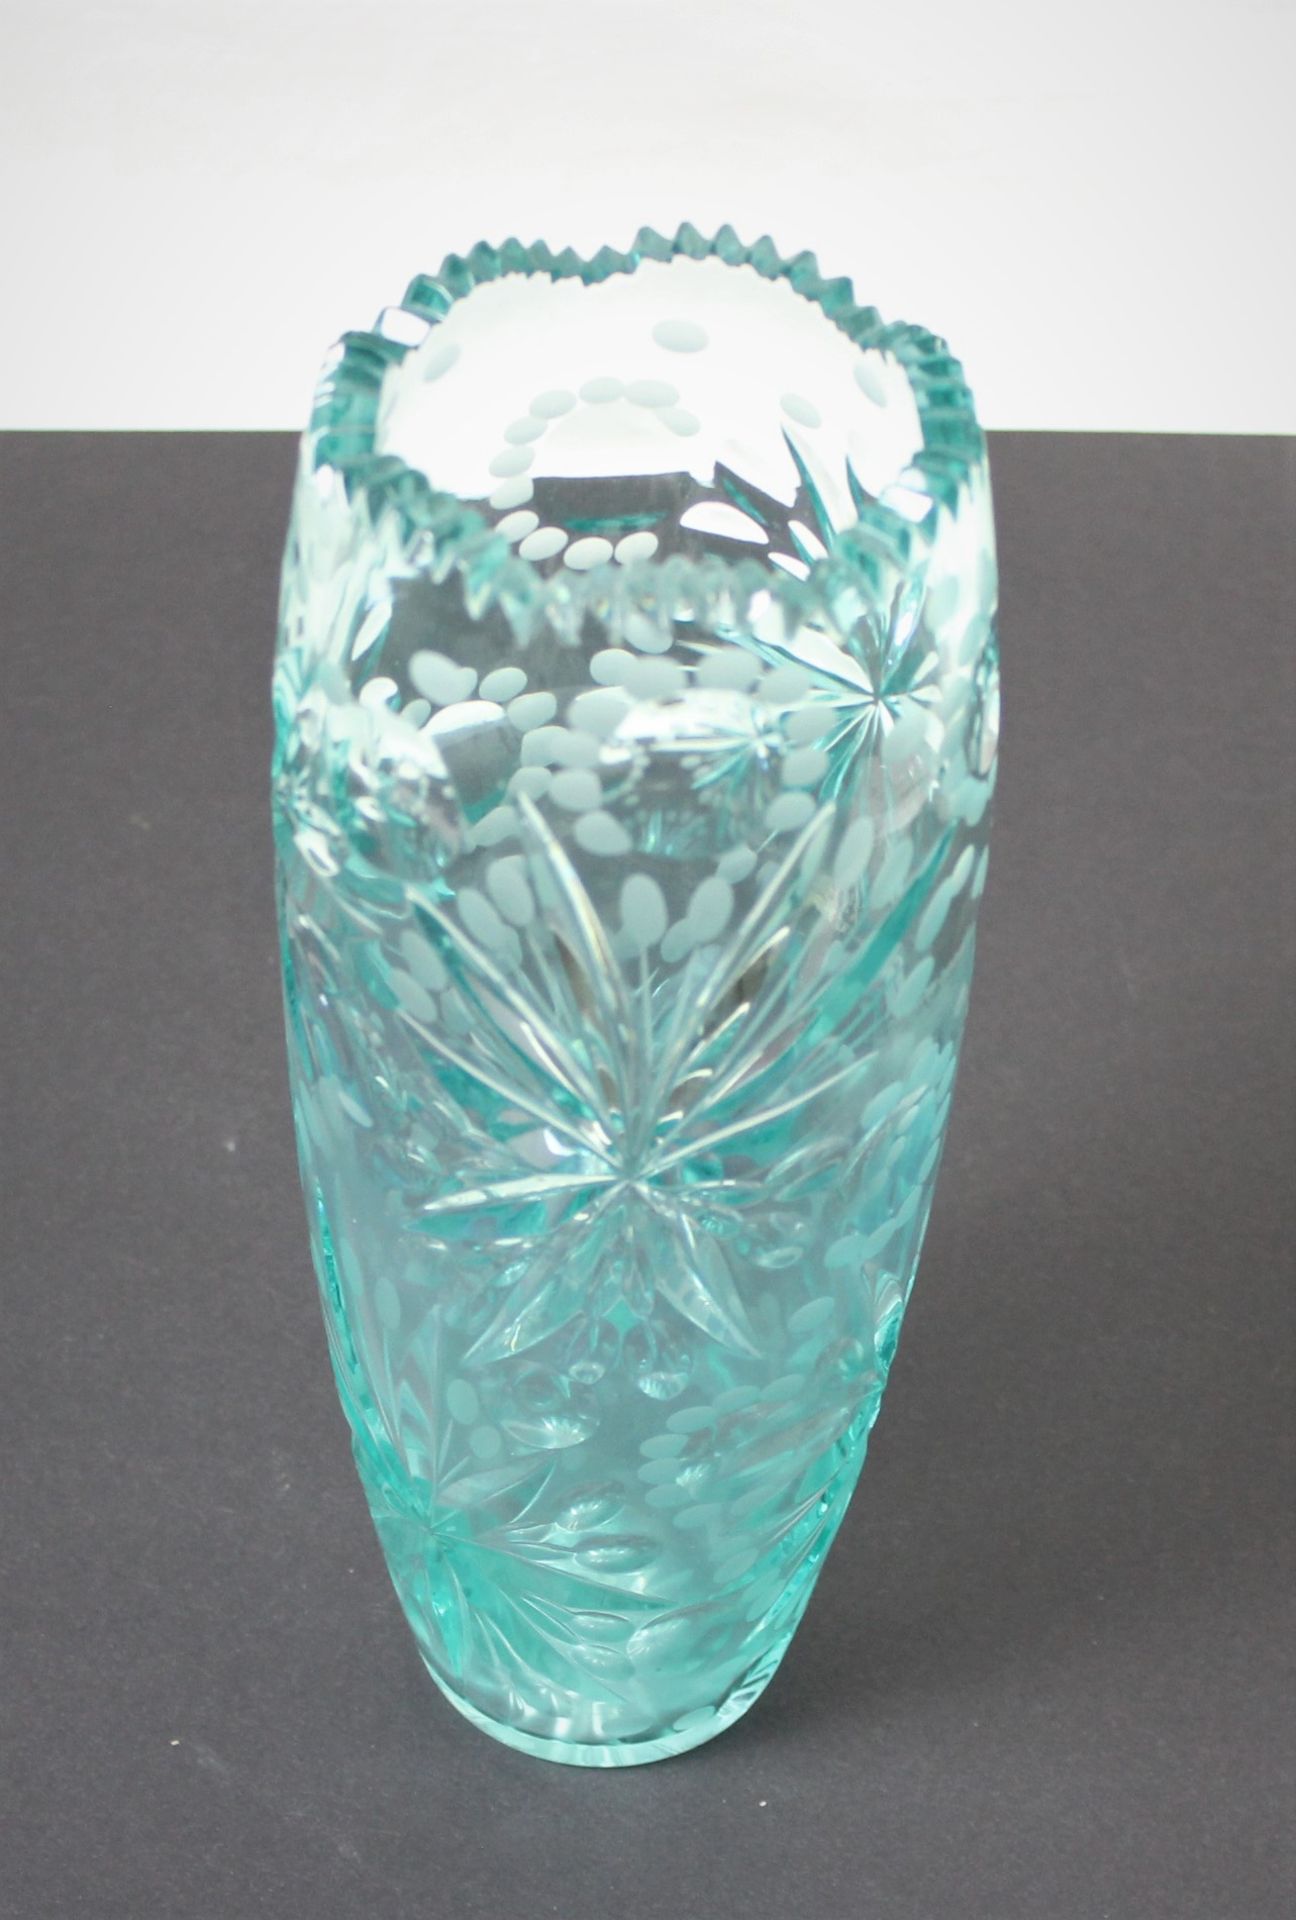 Aquamarinfarbene geschliffene Bleikristall Glas Vase